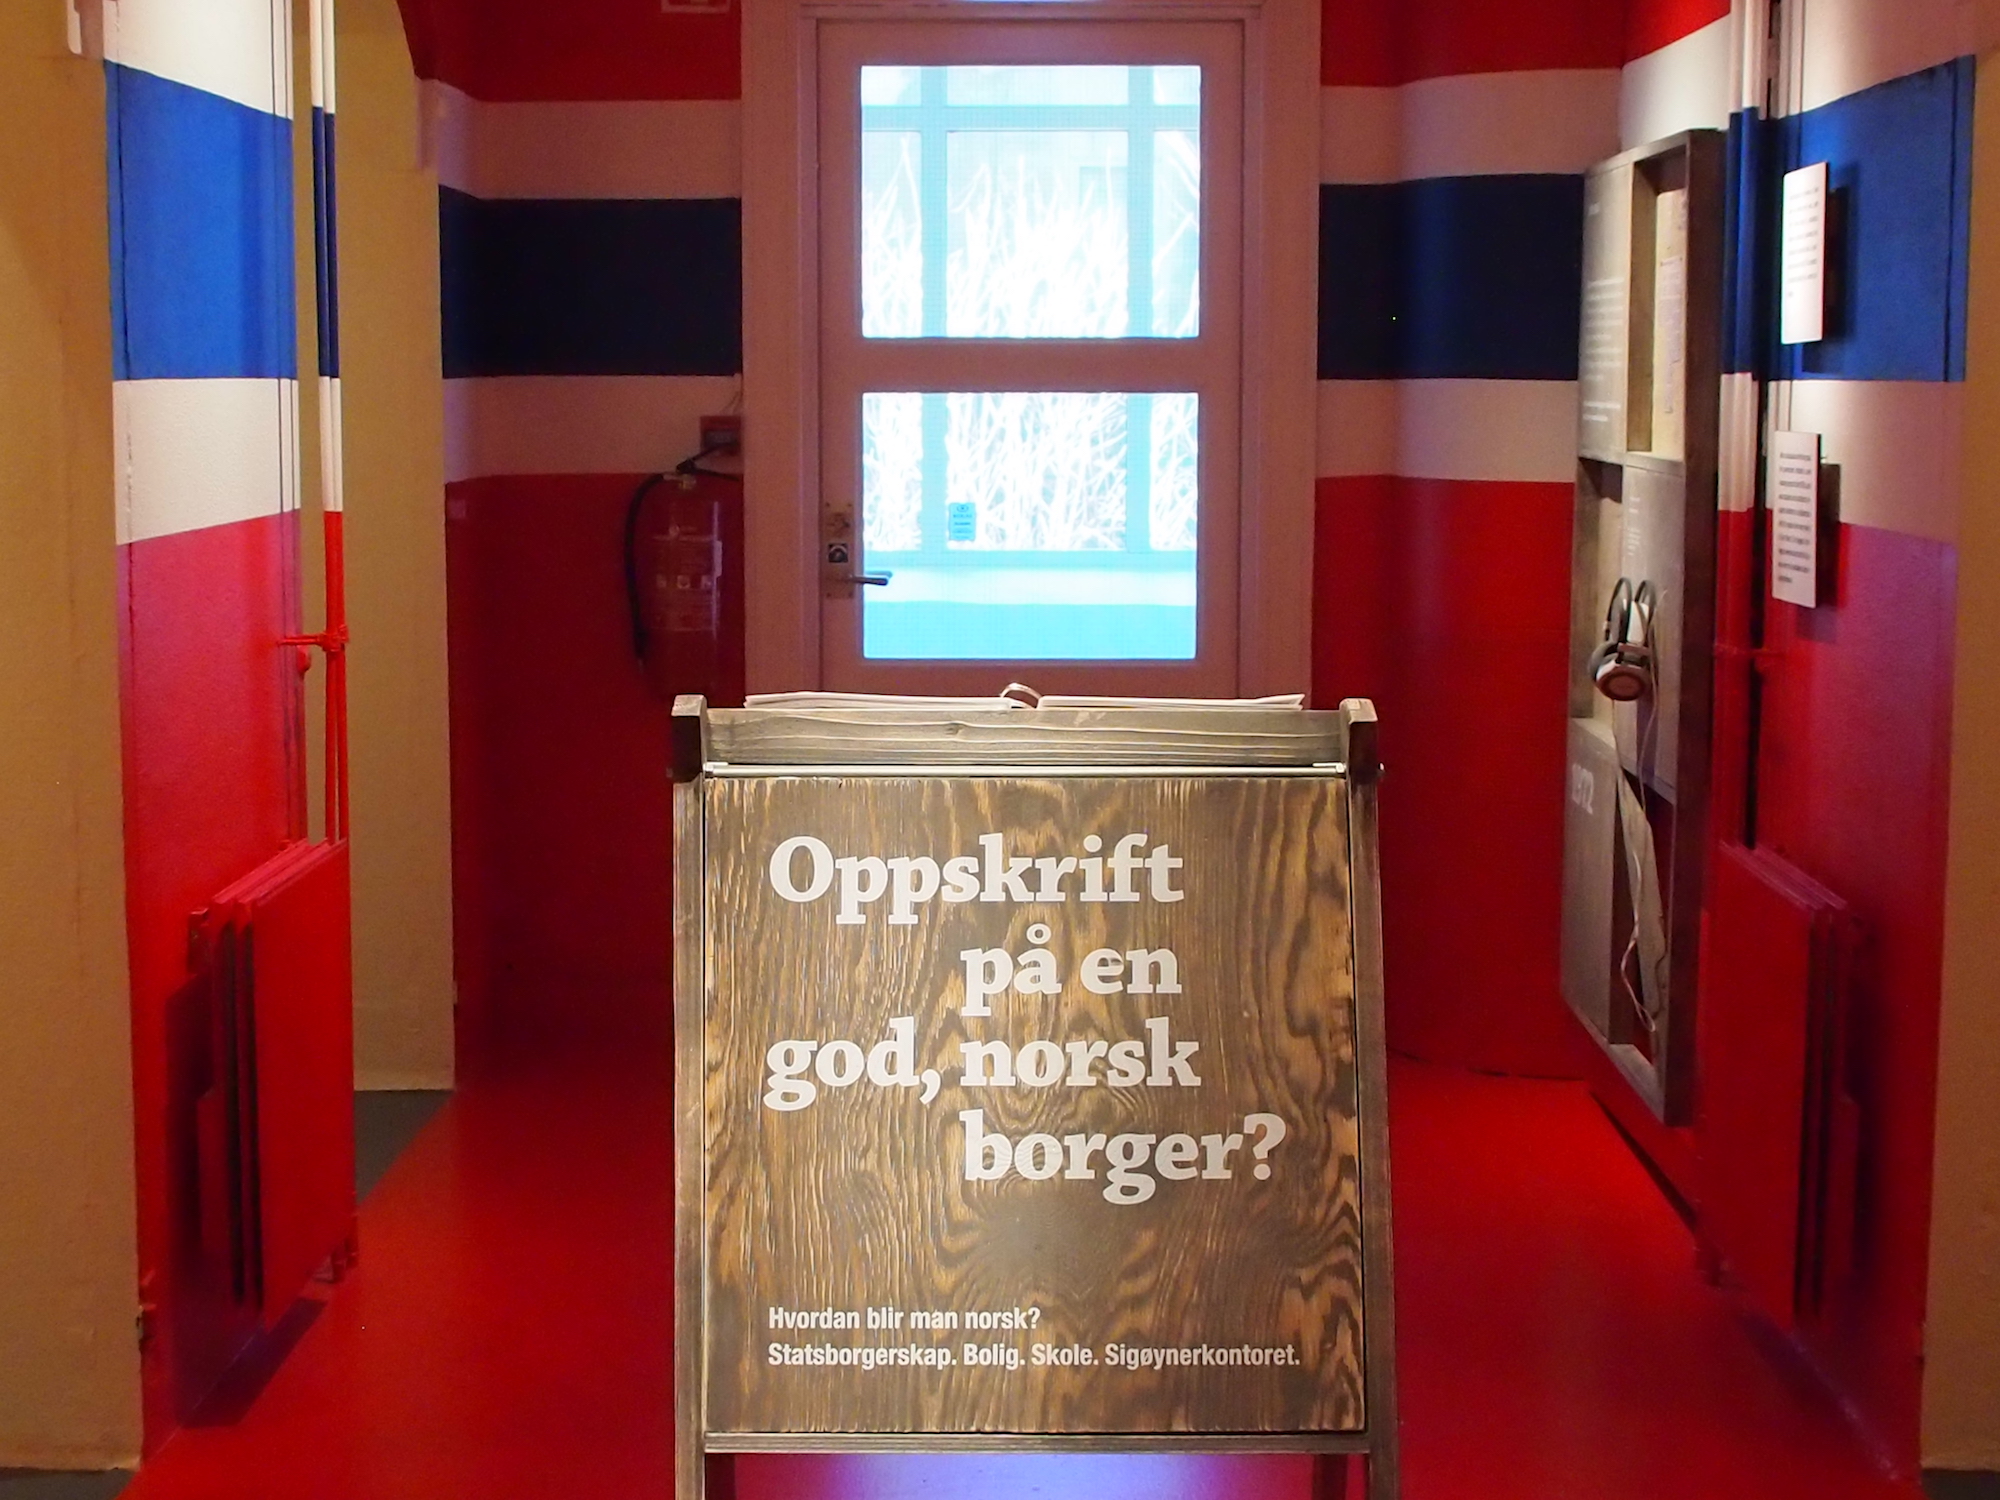 ASSIMILASJON: Dokumentasjon av norsk assimilasjonspolitikk er fremstilt i et rom malt som det norske flagg – et effektfullt grep. Foto: Cecilie Skjerdal